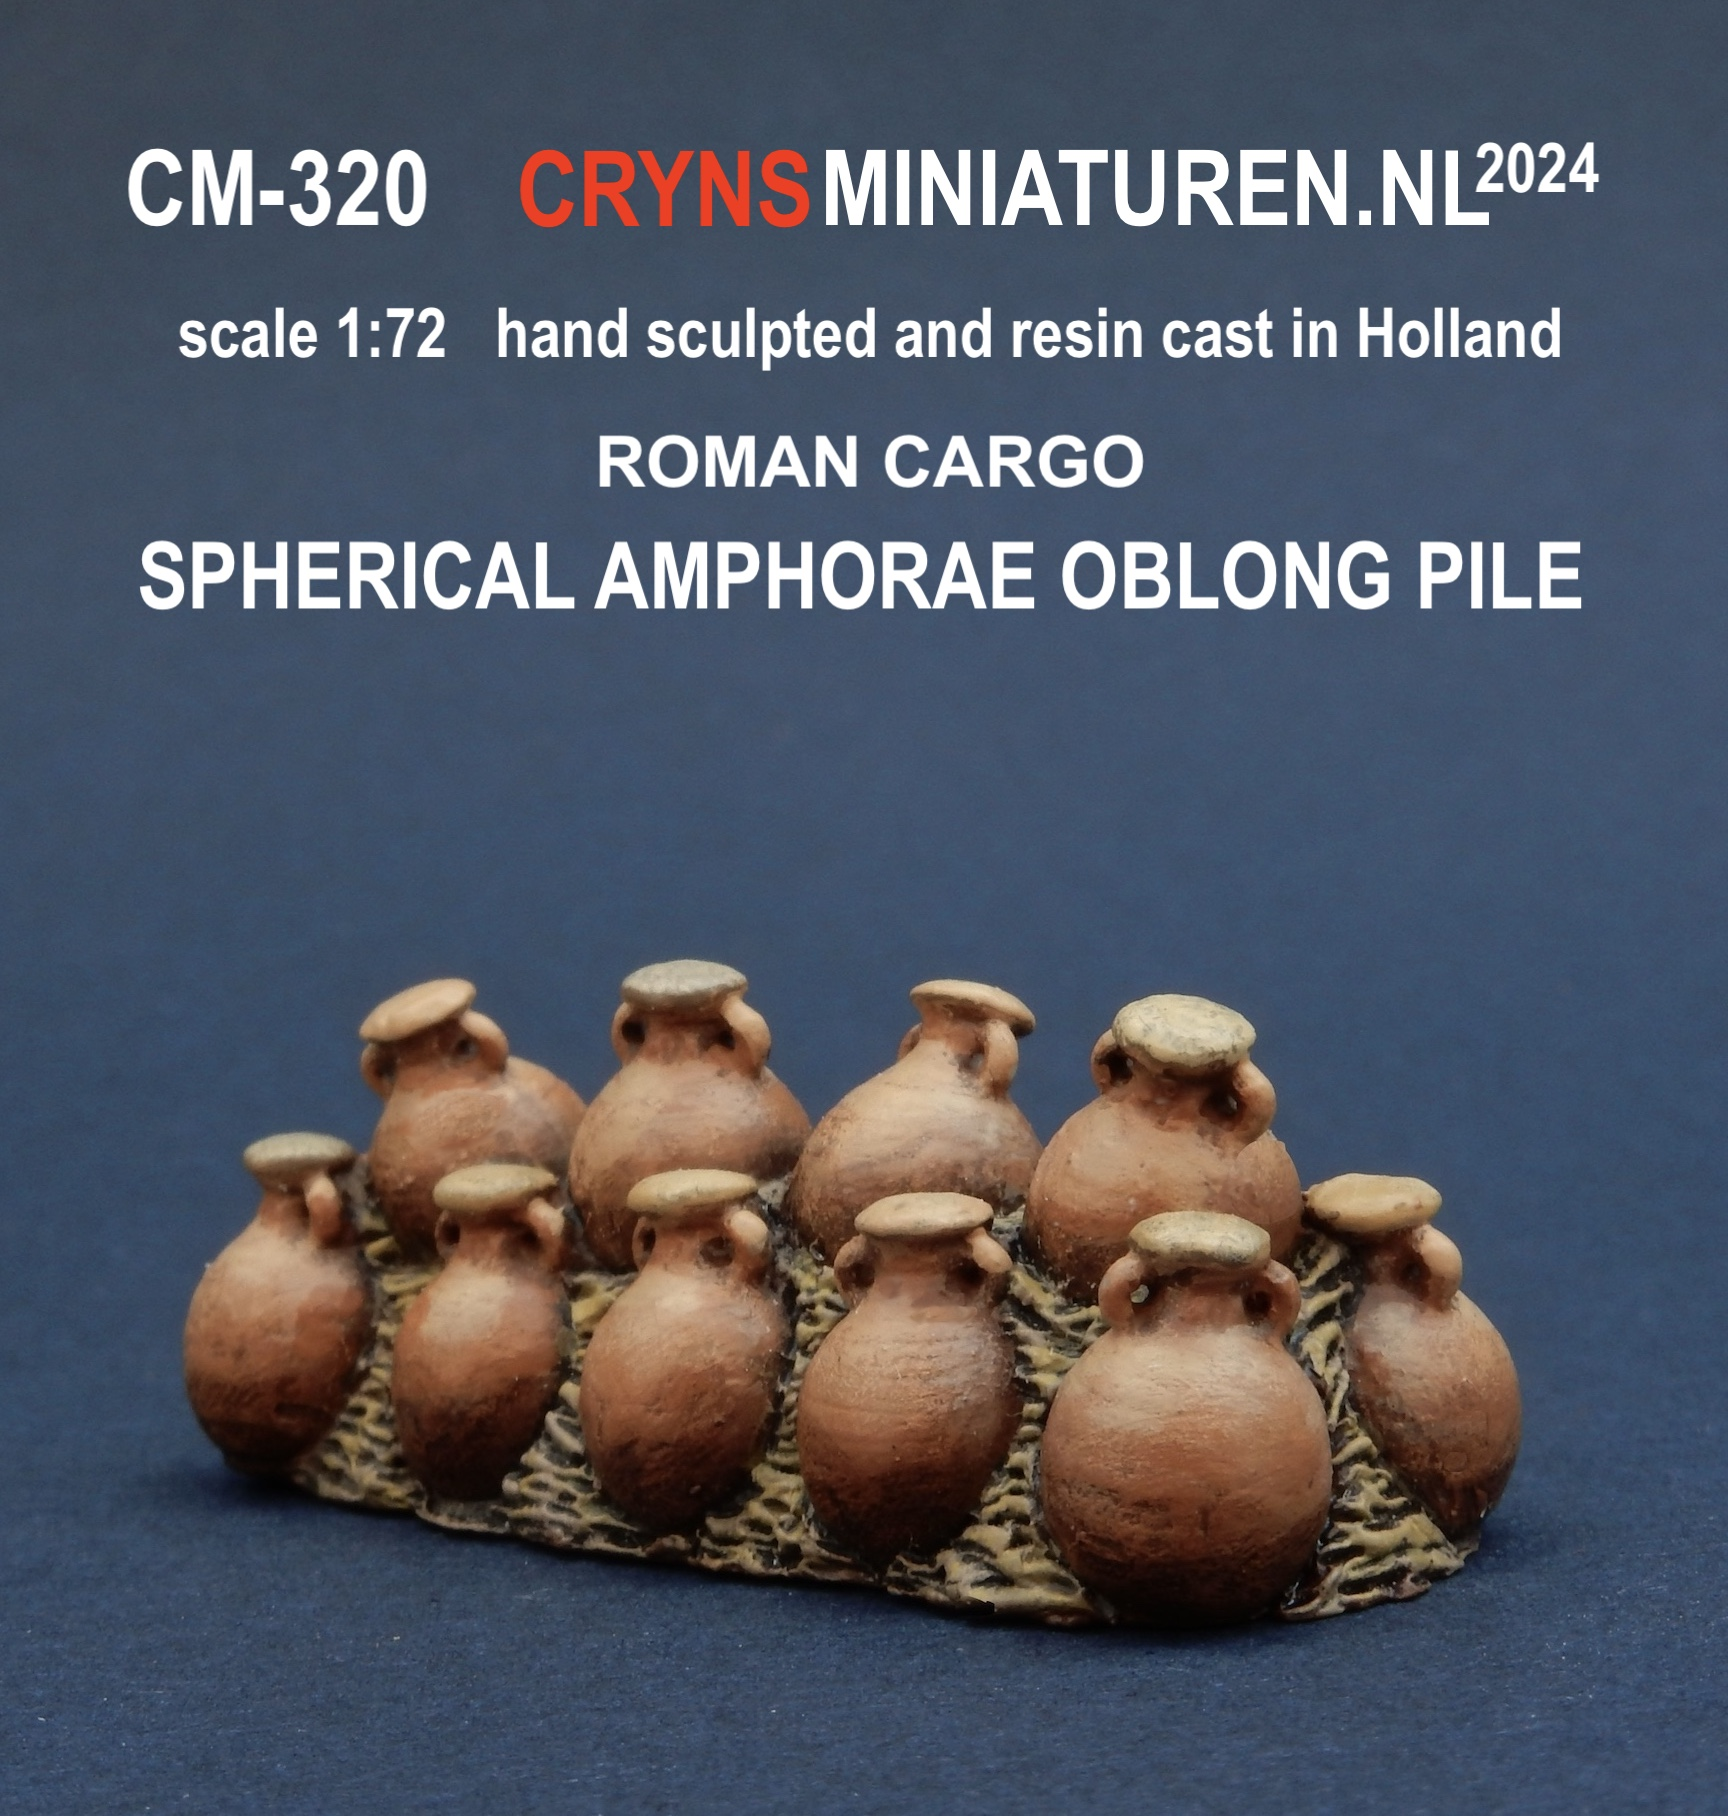 Roman Cargo scale 1:72 miniature